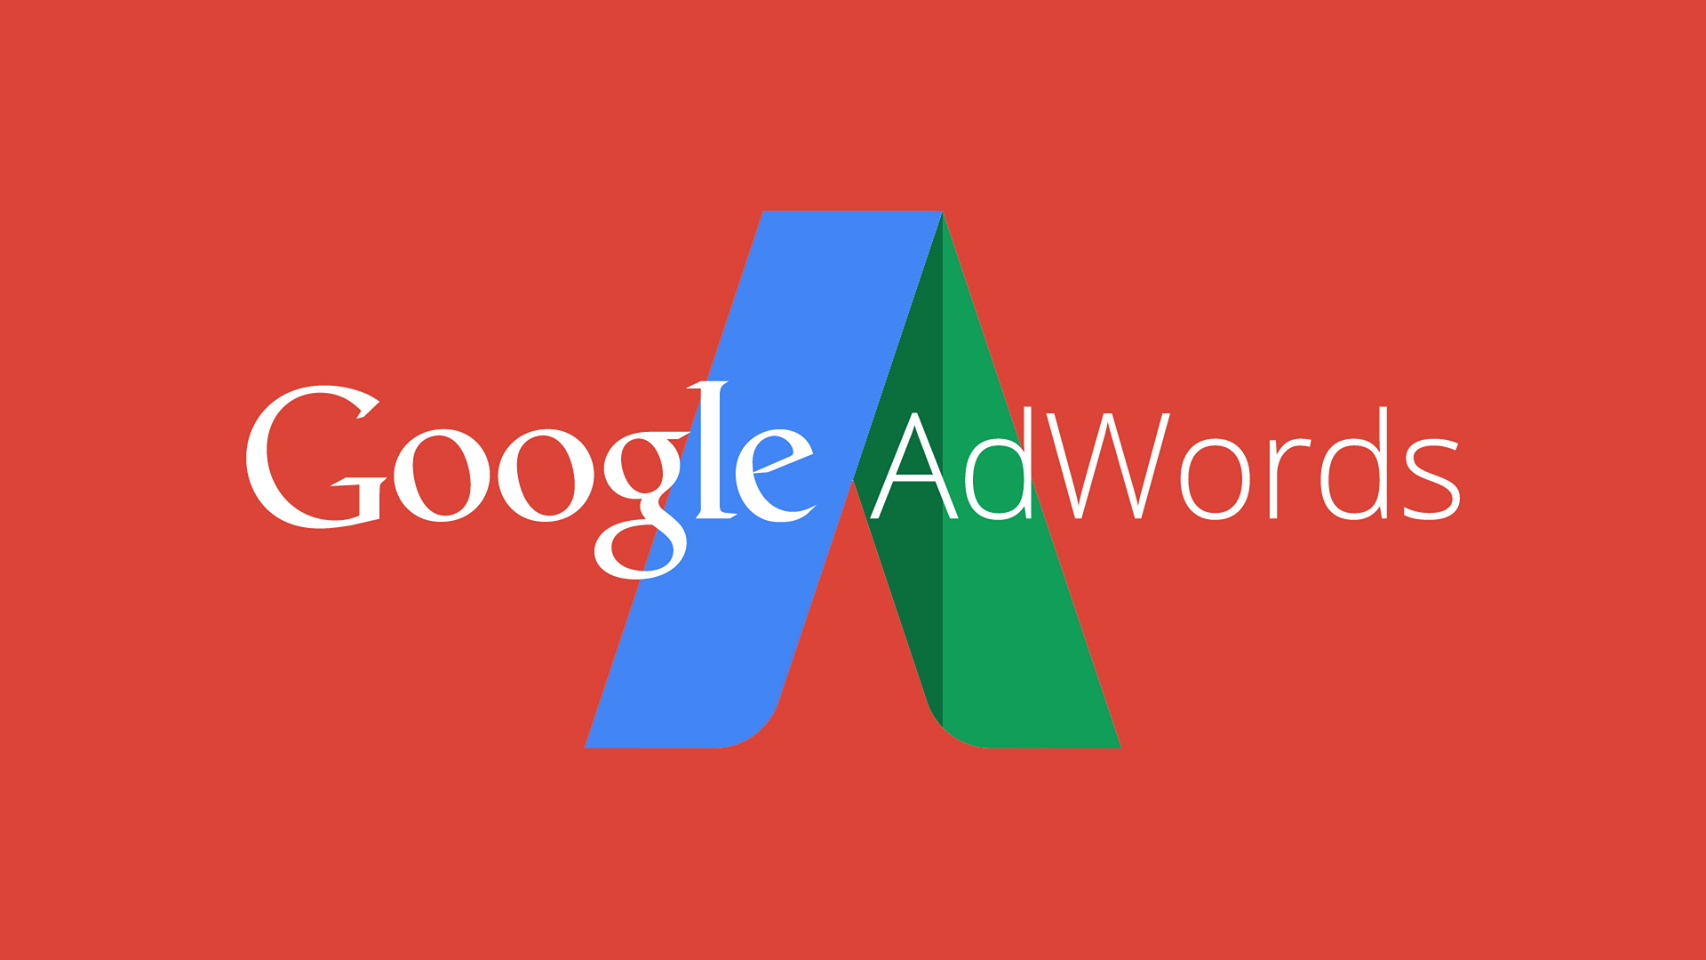 Google Ads открывает доступ к новому рекламному формату